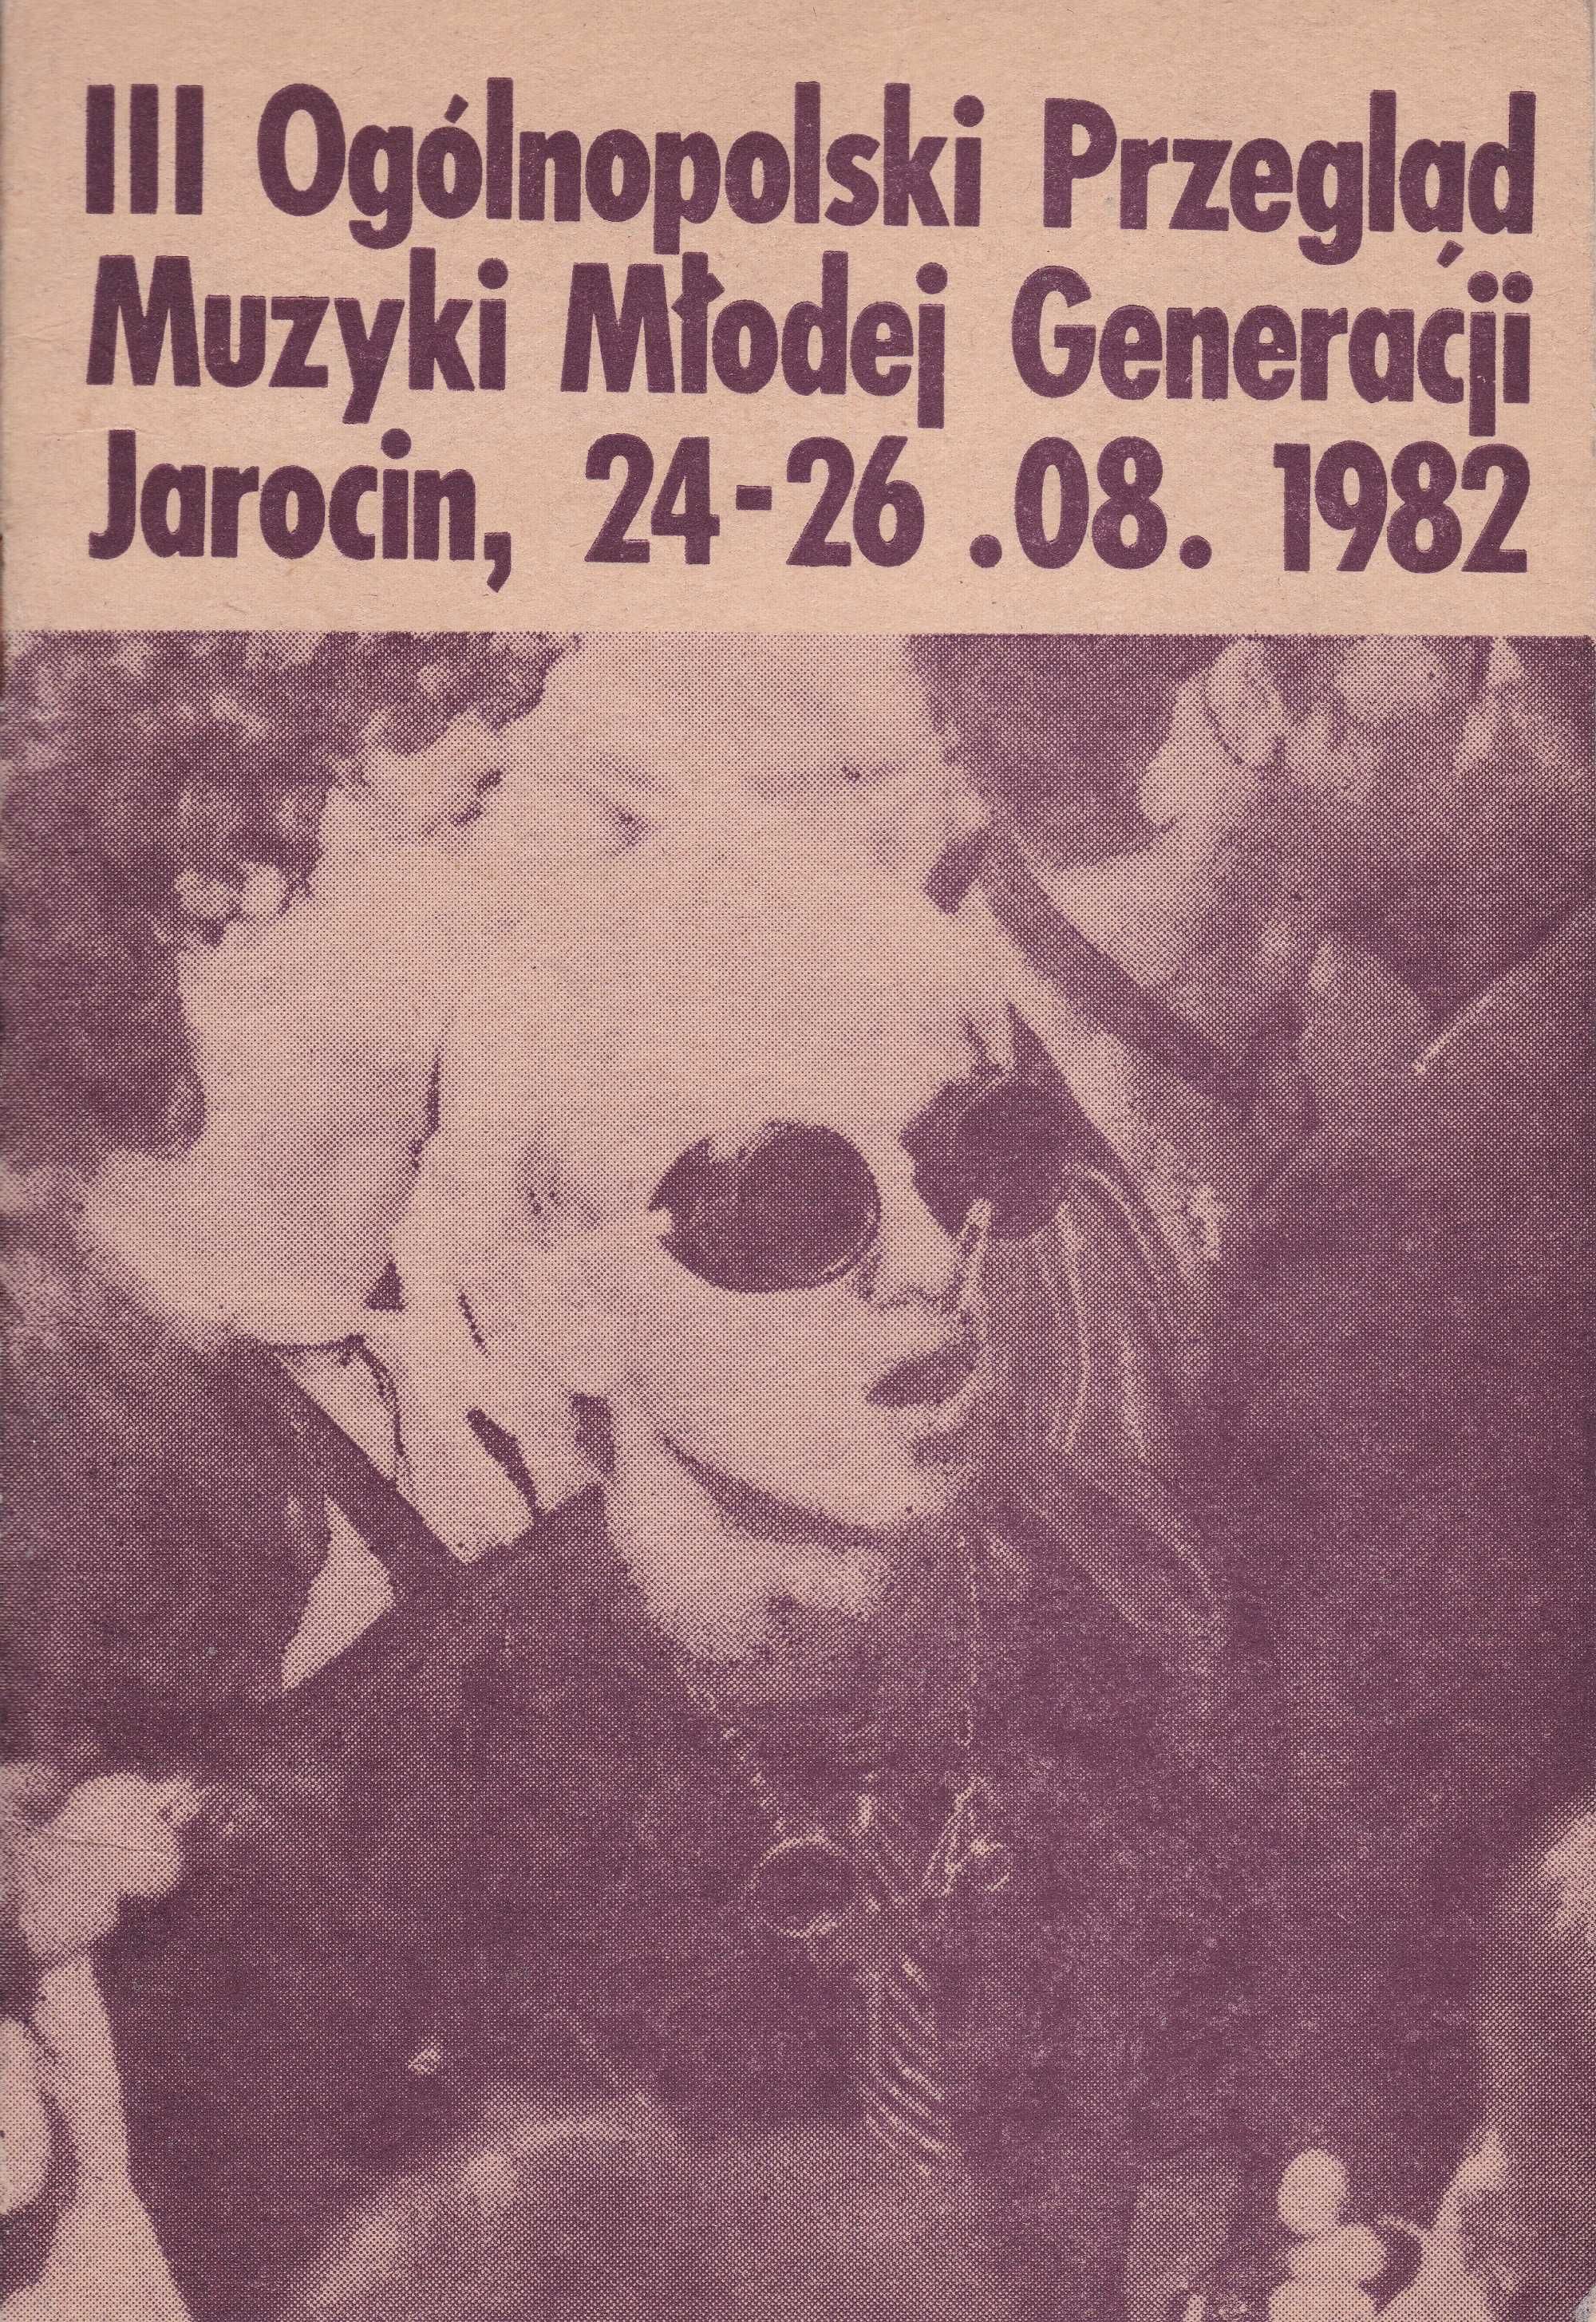 Jarocin Festiwal Folder informator rok 1982 nowy